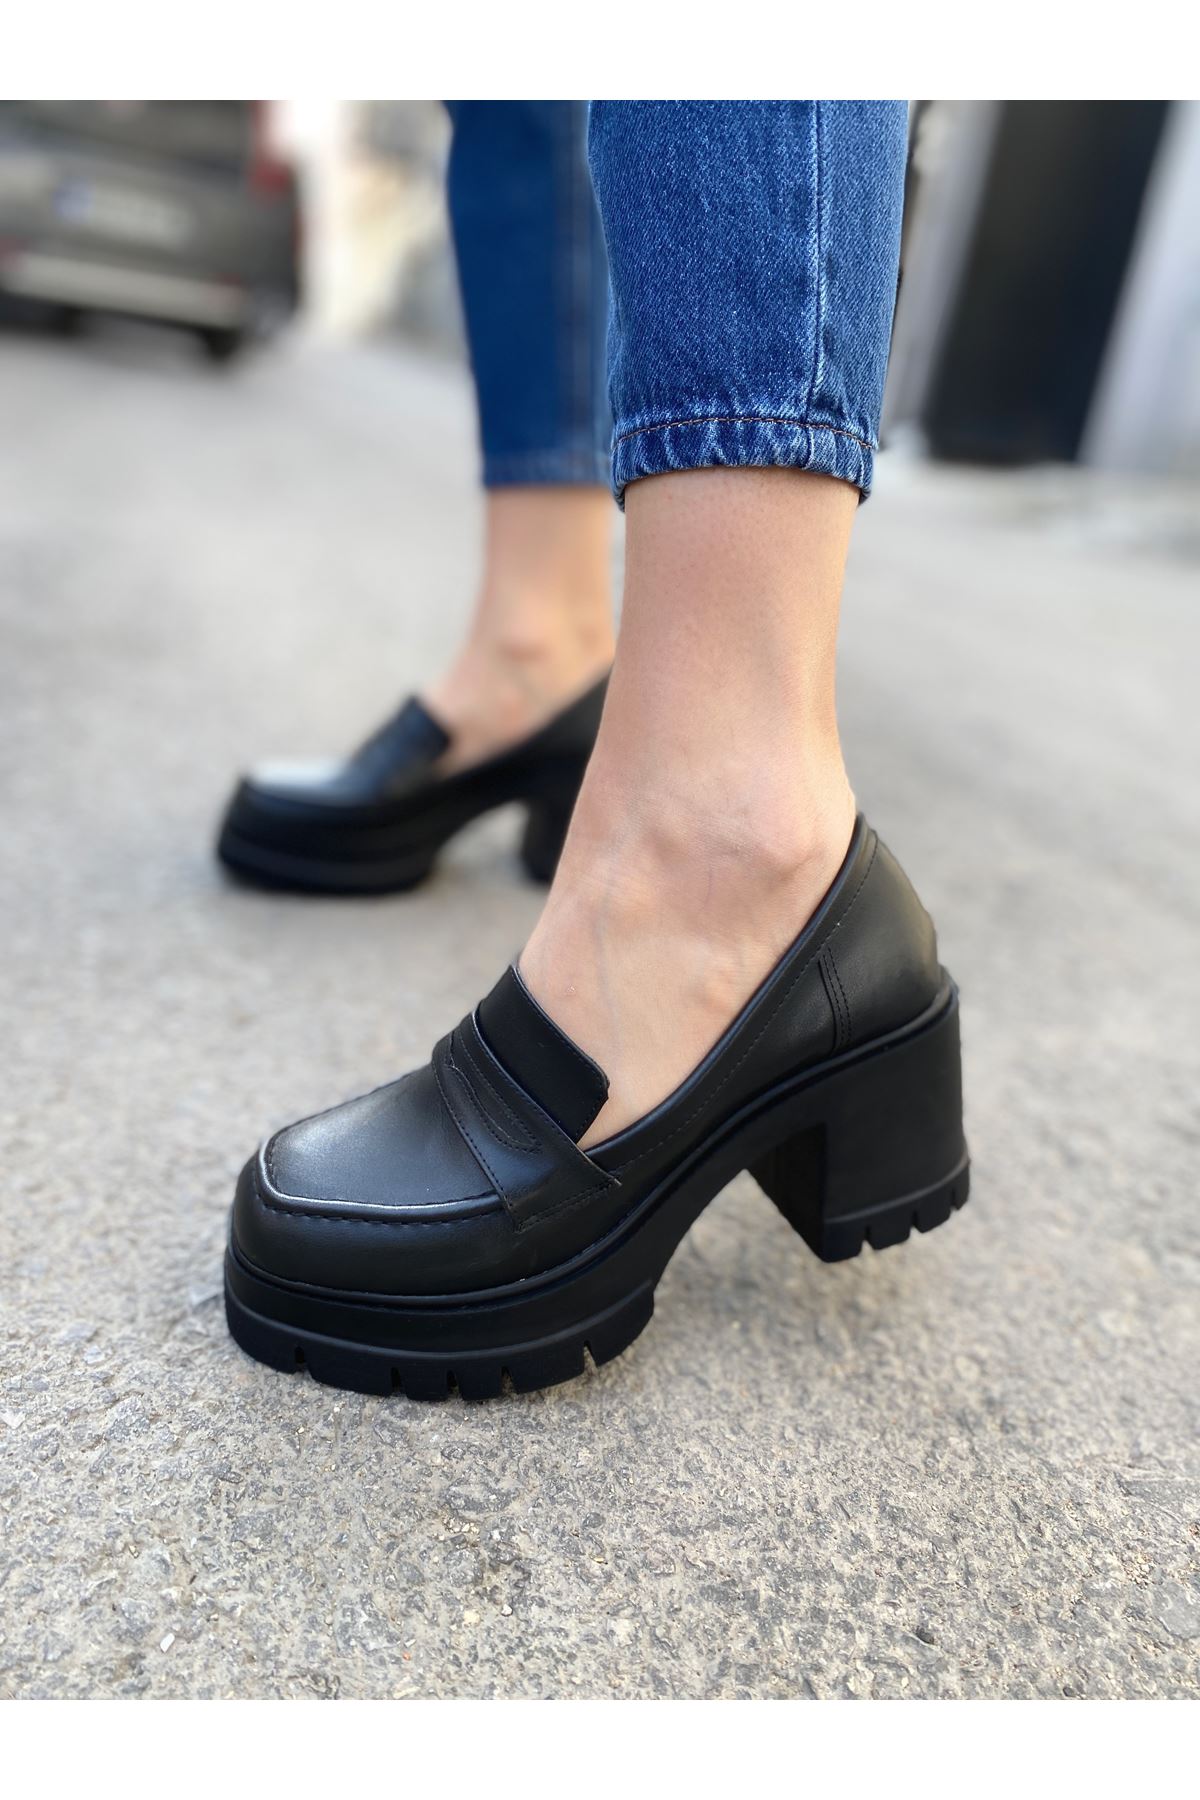 Kadın Luzi Kalın Topuklu Ayakkabı - siyah-deri